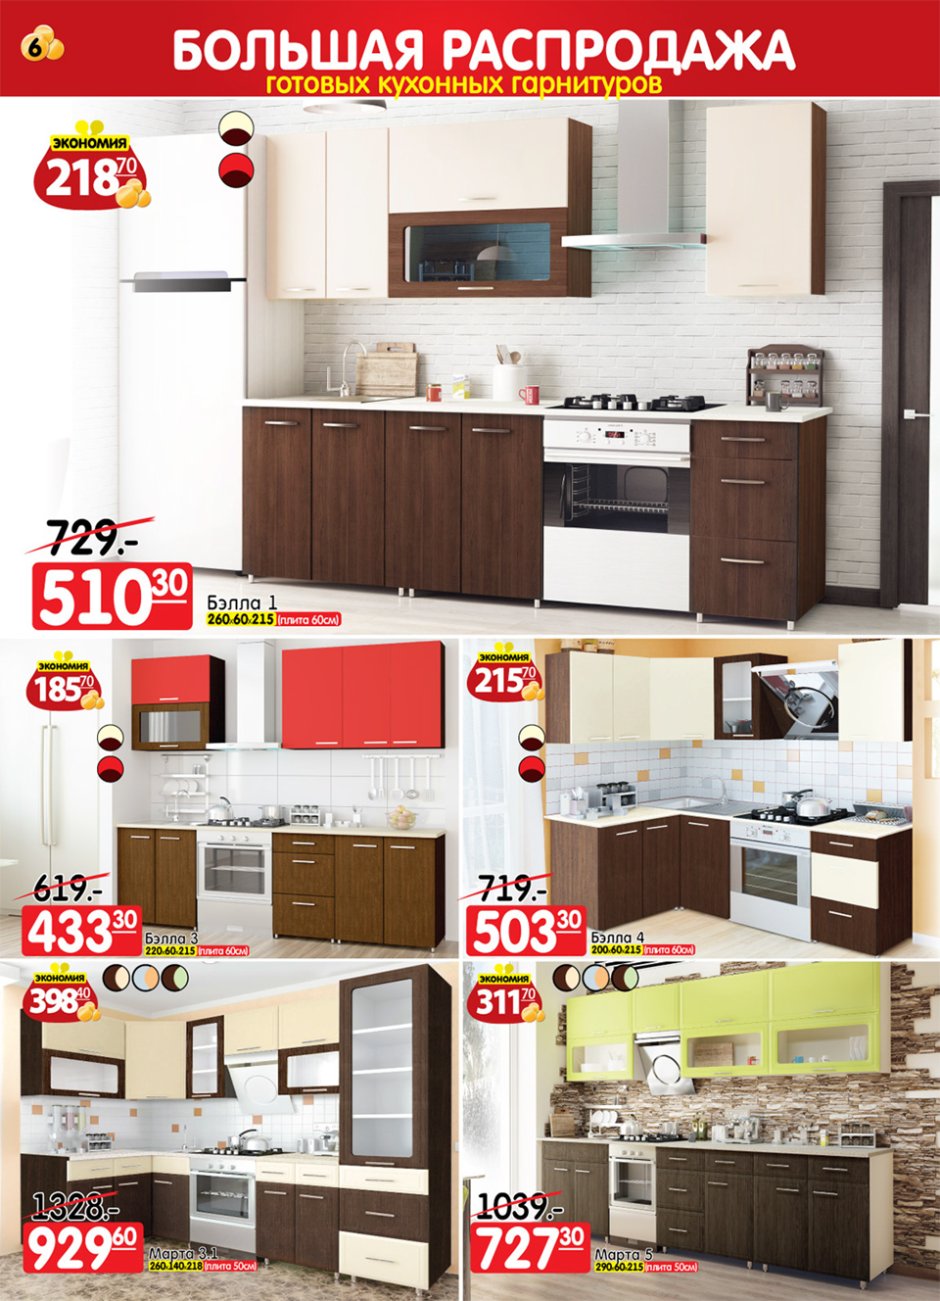 Кухни ами мебель каталог с ценами